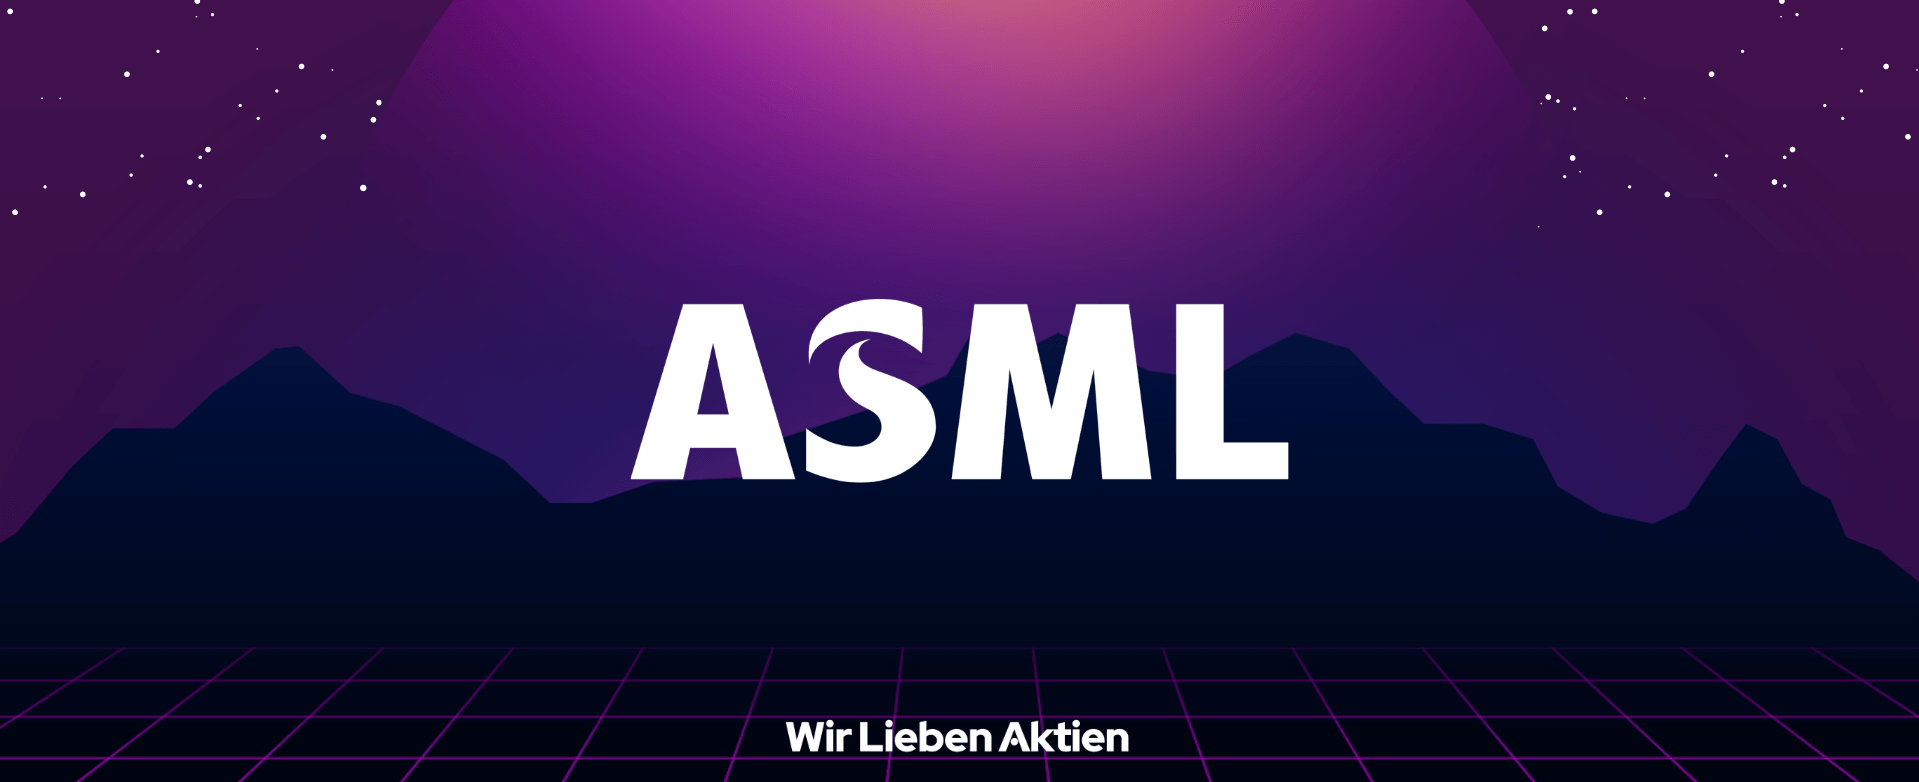 ASML Aktie Analyse - Unendliches Wachstumspotential in der Chip-Branche?